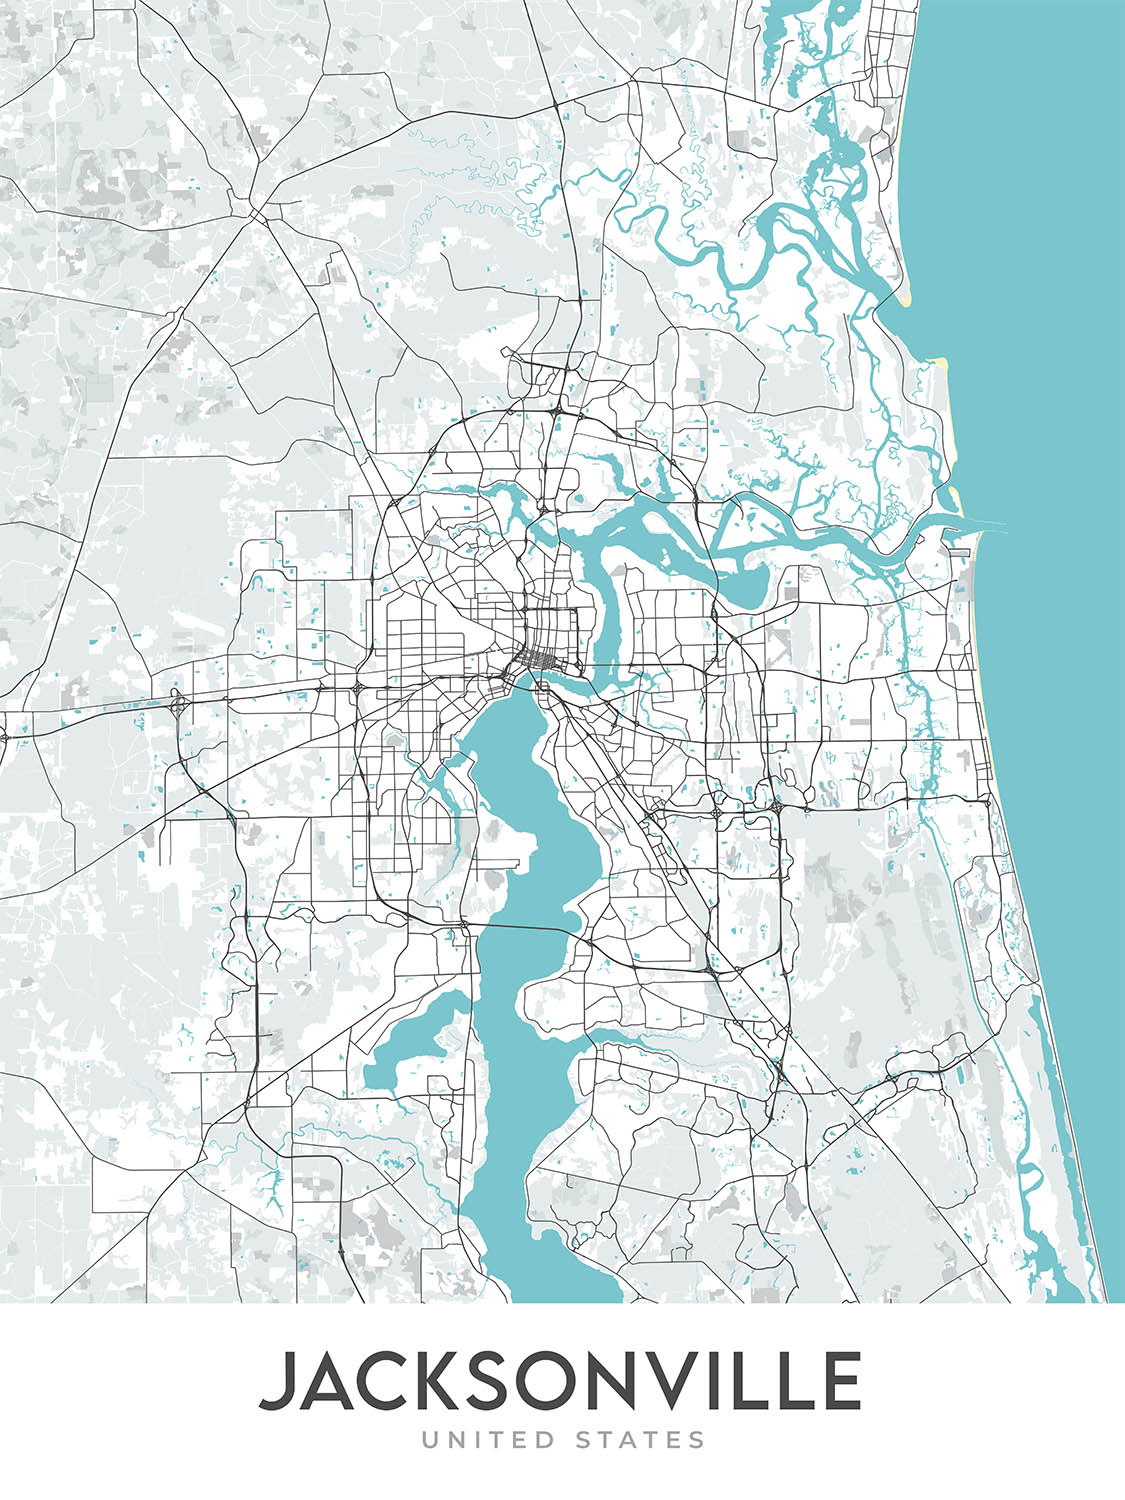 Moderner Stadtplan von Jacksonville, FL: Riverside, Springfield, San Marco, I-95, I-295